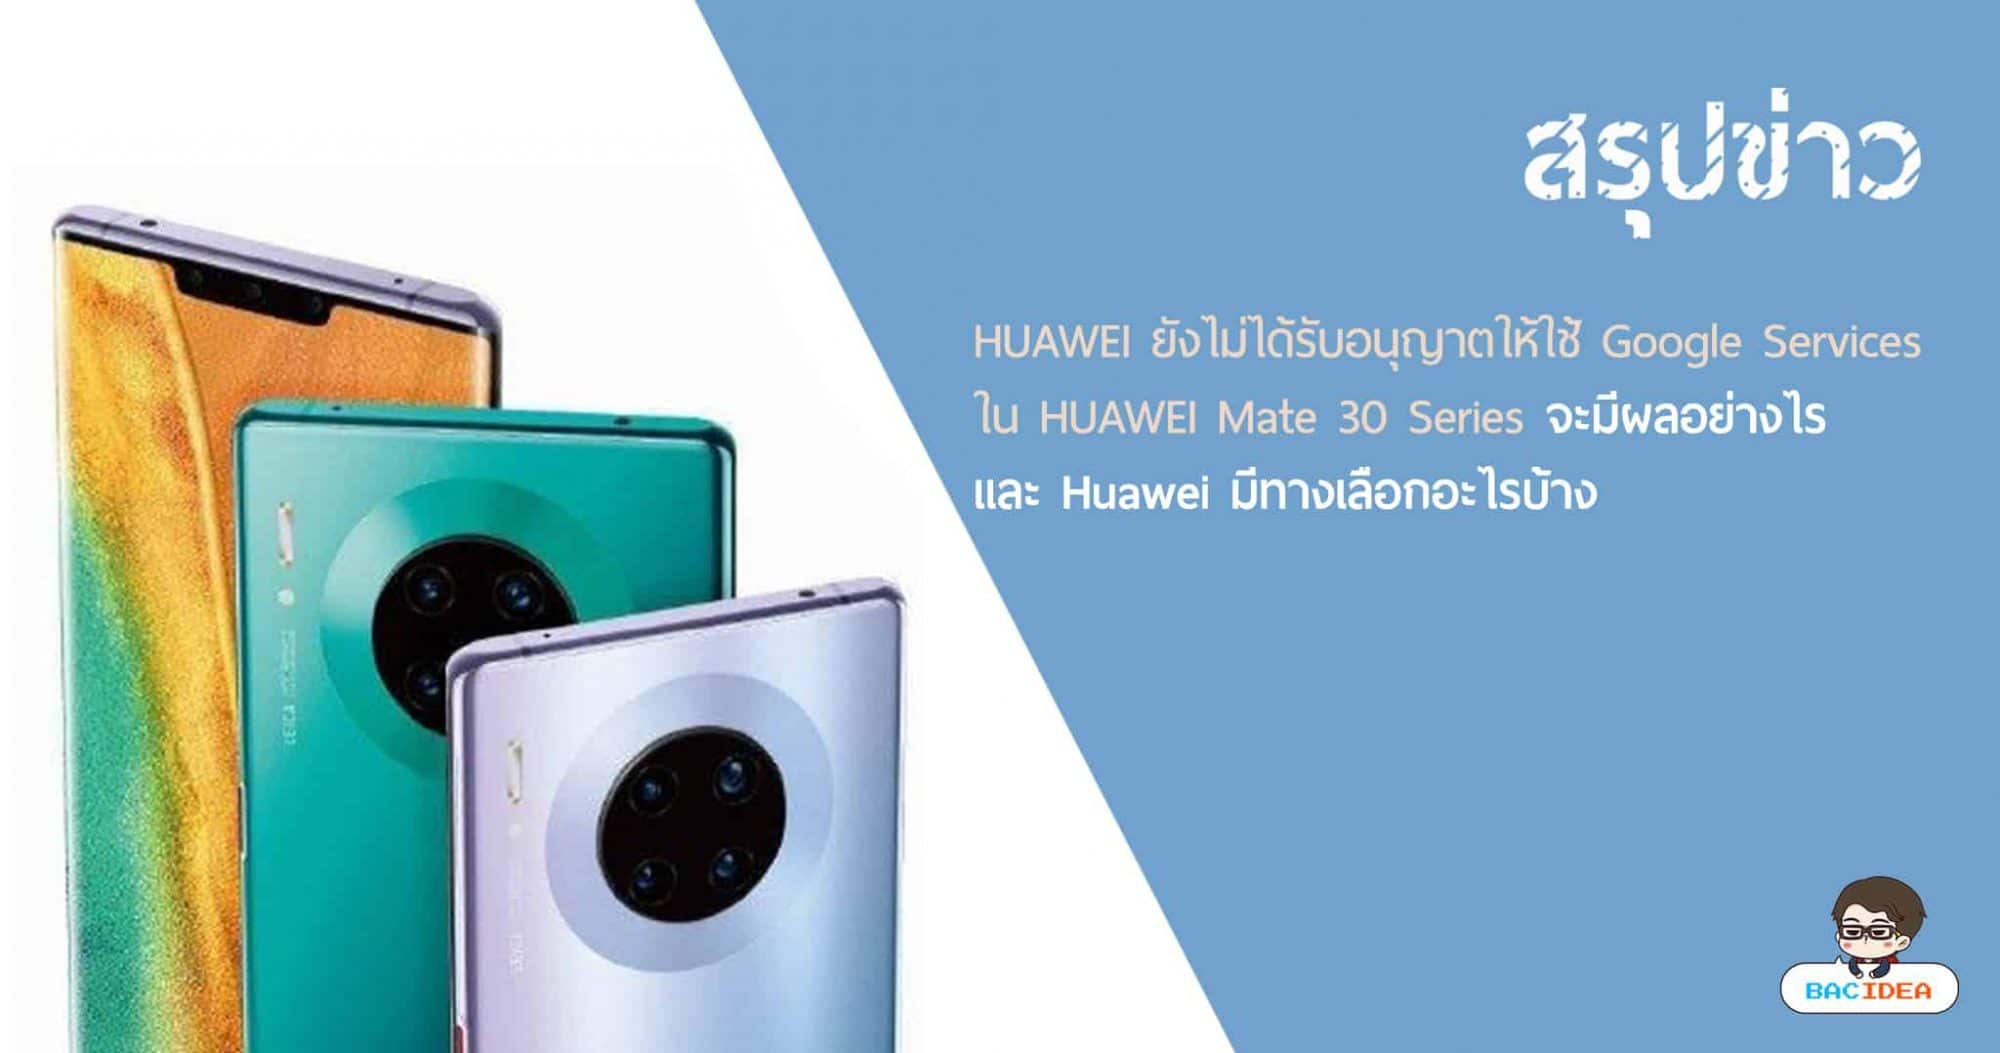 สรุป​ข่าว HUAWEI​ ยัง​ไม่ได้​รับ​อนุญาต​ให้​ใช้ Google​ Services​ ใน HUAWEI​ Mate 30 Series​ จะ​มีผลอย่างไร และ Huawei มี​ทาง​เลือก​อะไร​บ้าง 1